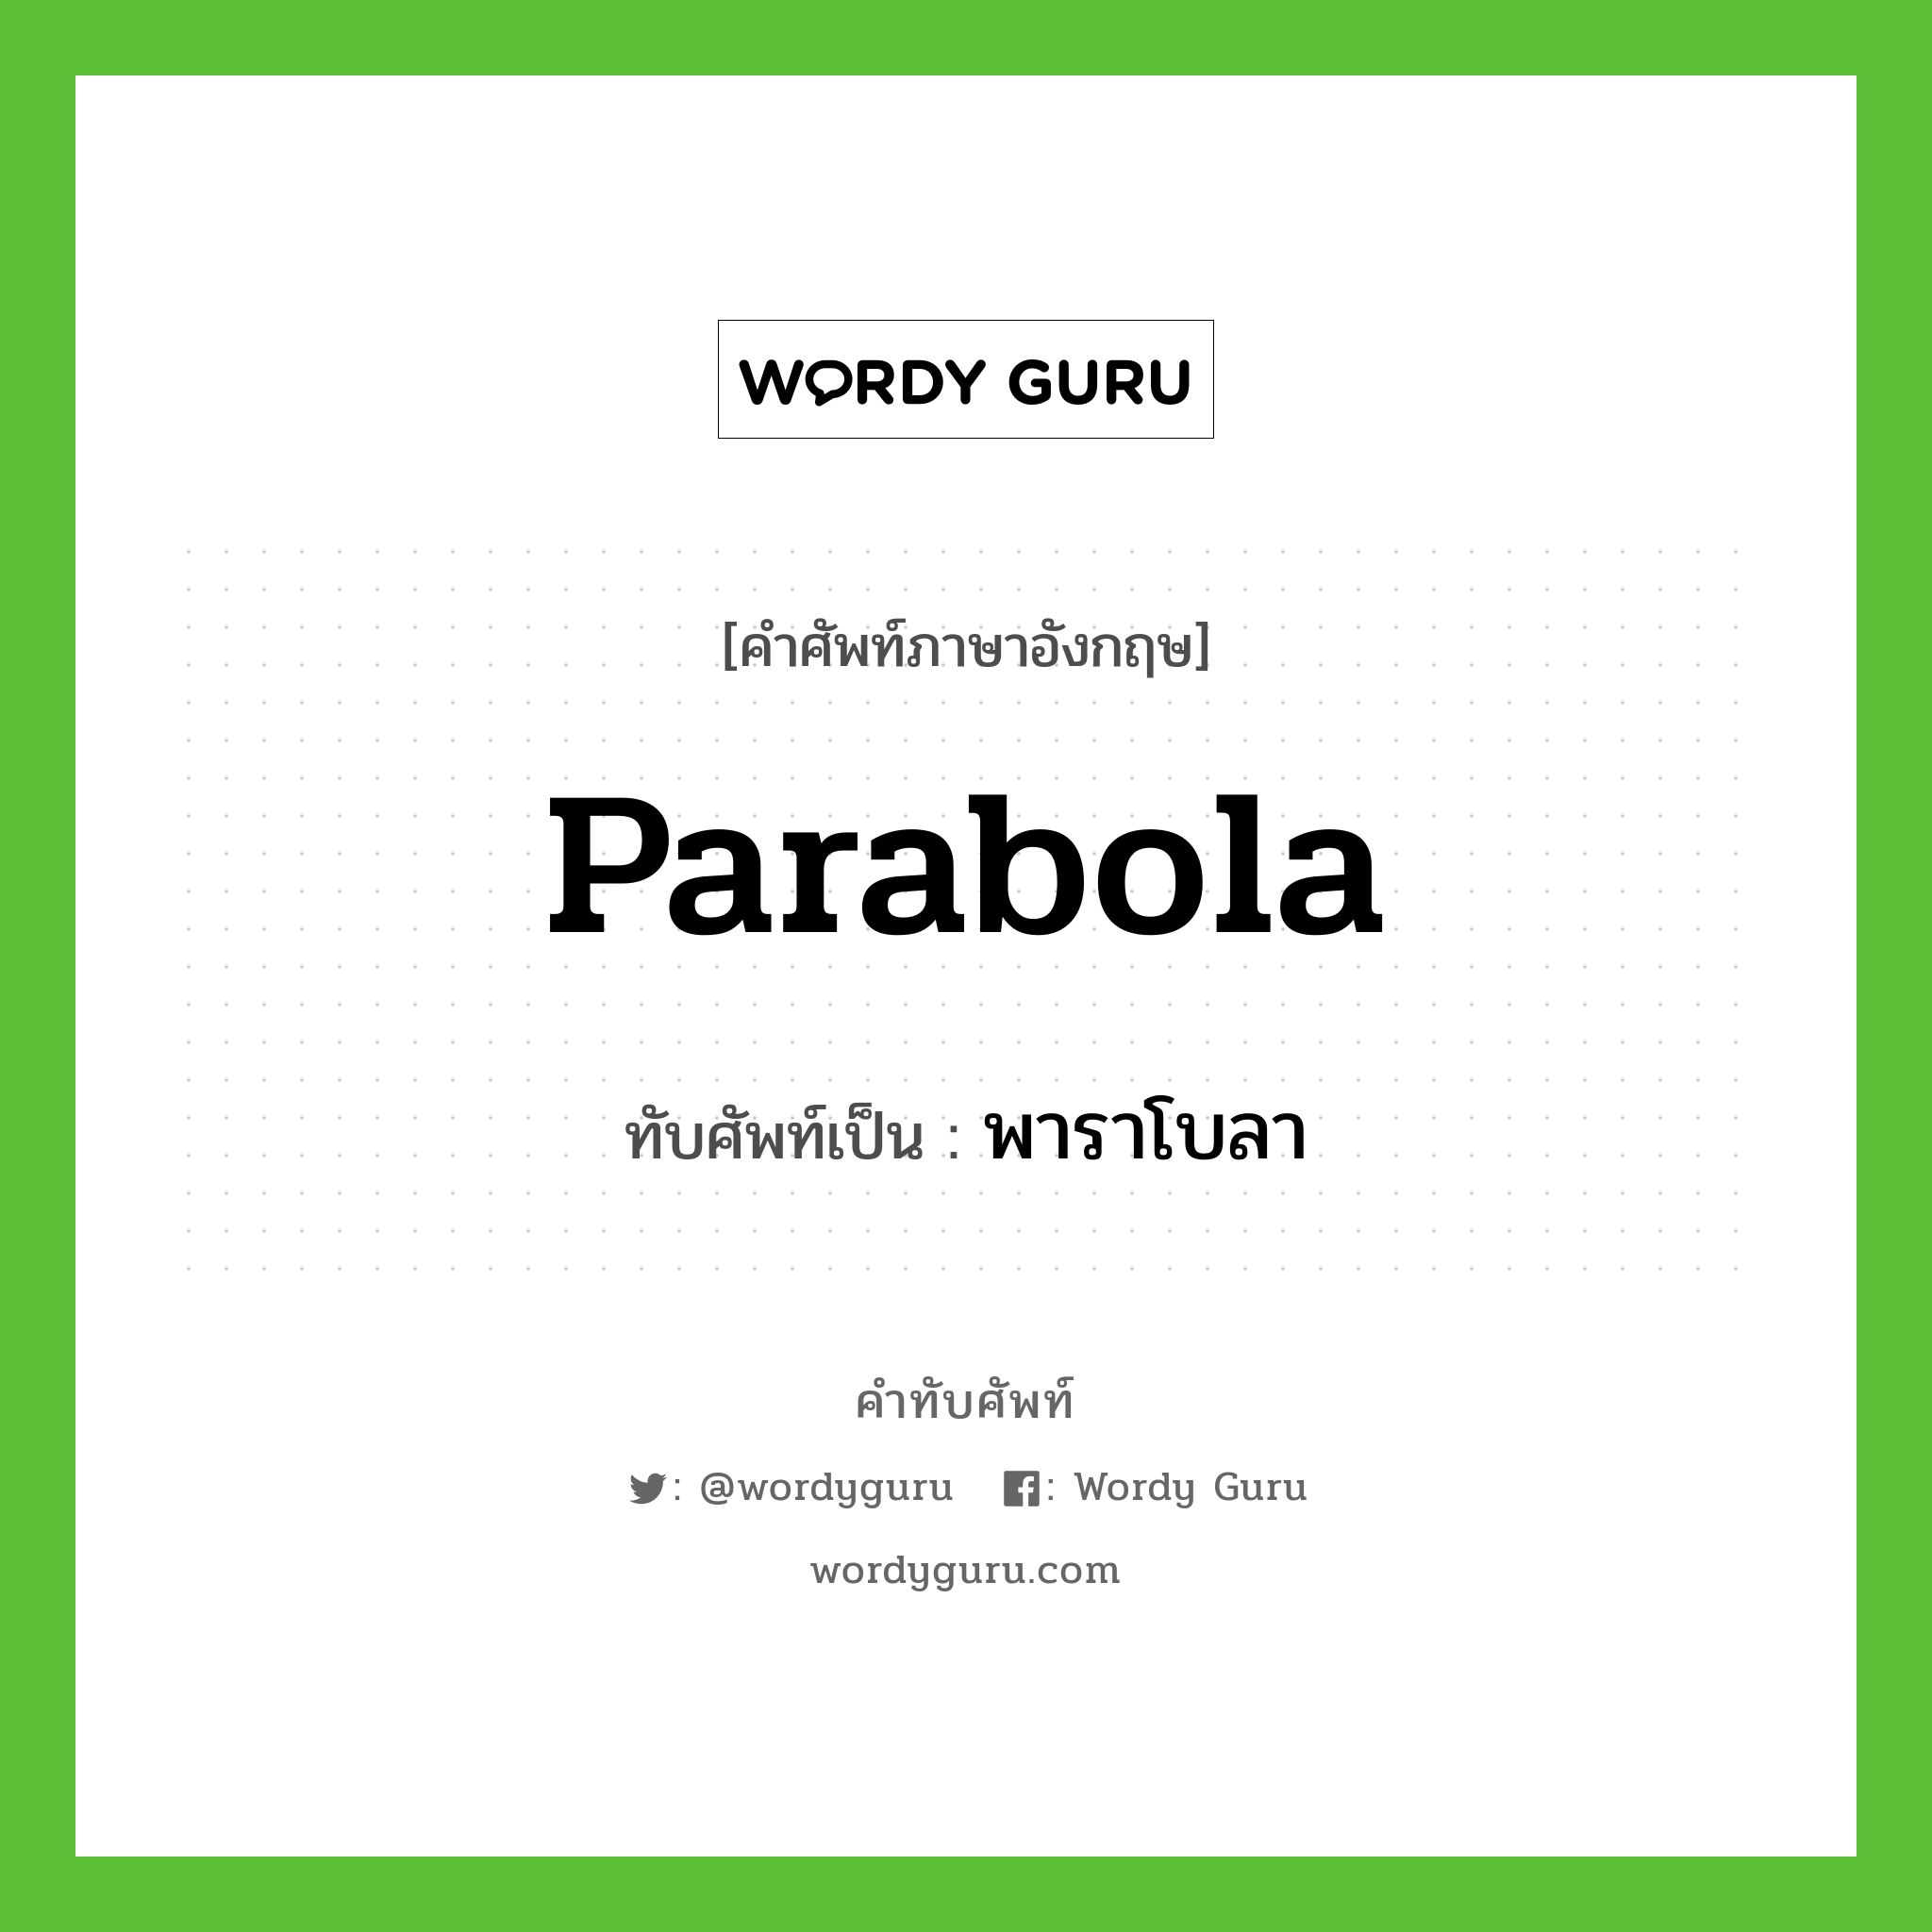 parabola เขียนเป็นคำไทยว่าอะไร?, คำศัพท์ภาษาอังกฤษ parabola ทับศัพท์เป็น พาราโบลา